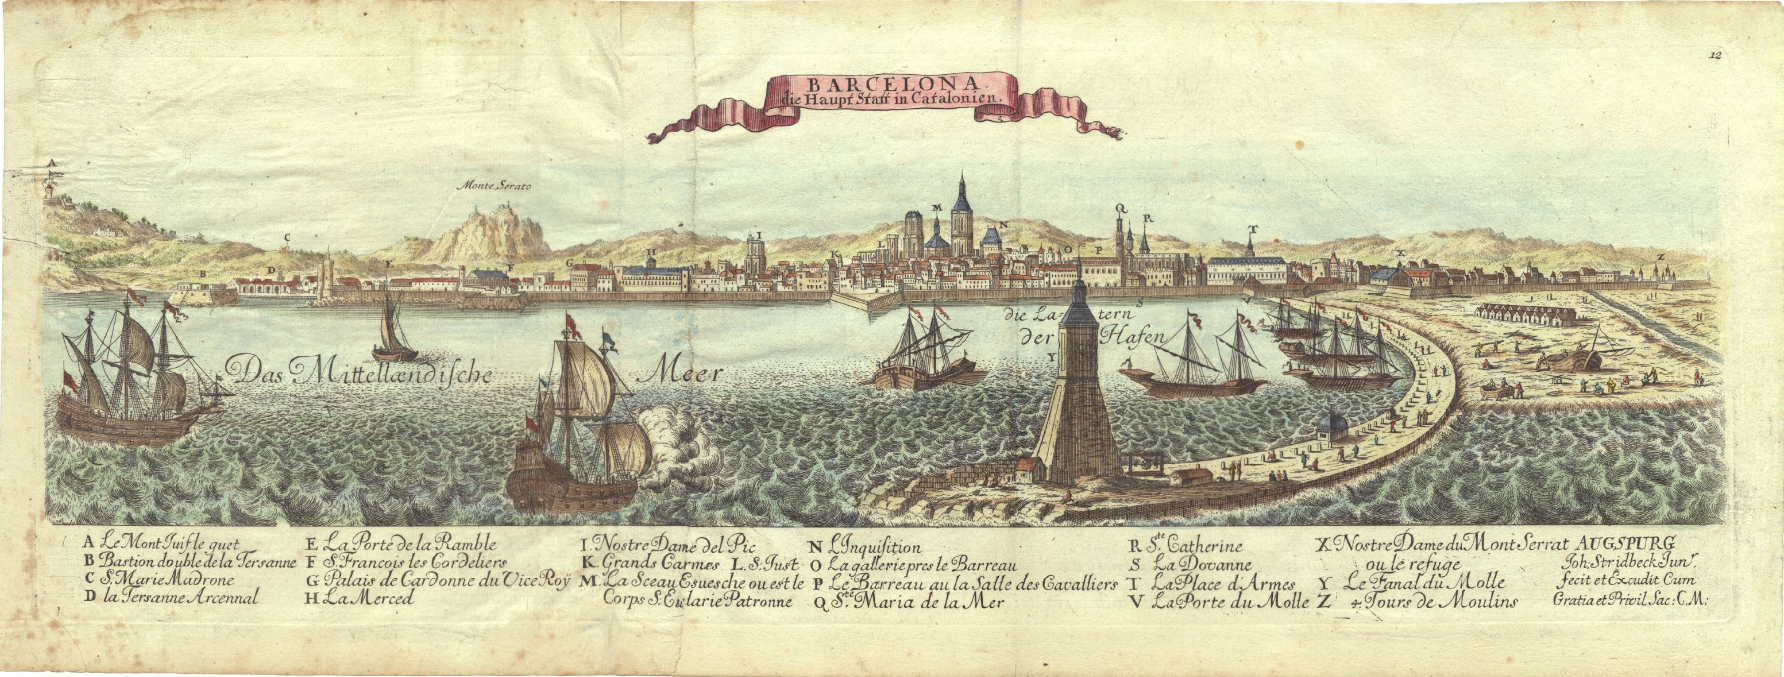 Vista de Barcelona a principis del segle XVIII. Font Cartoteca de Catalunya